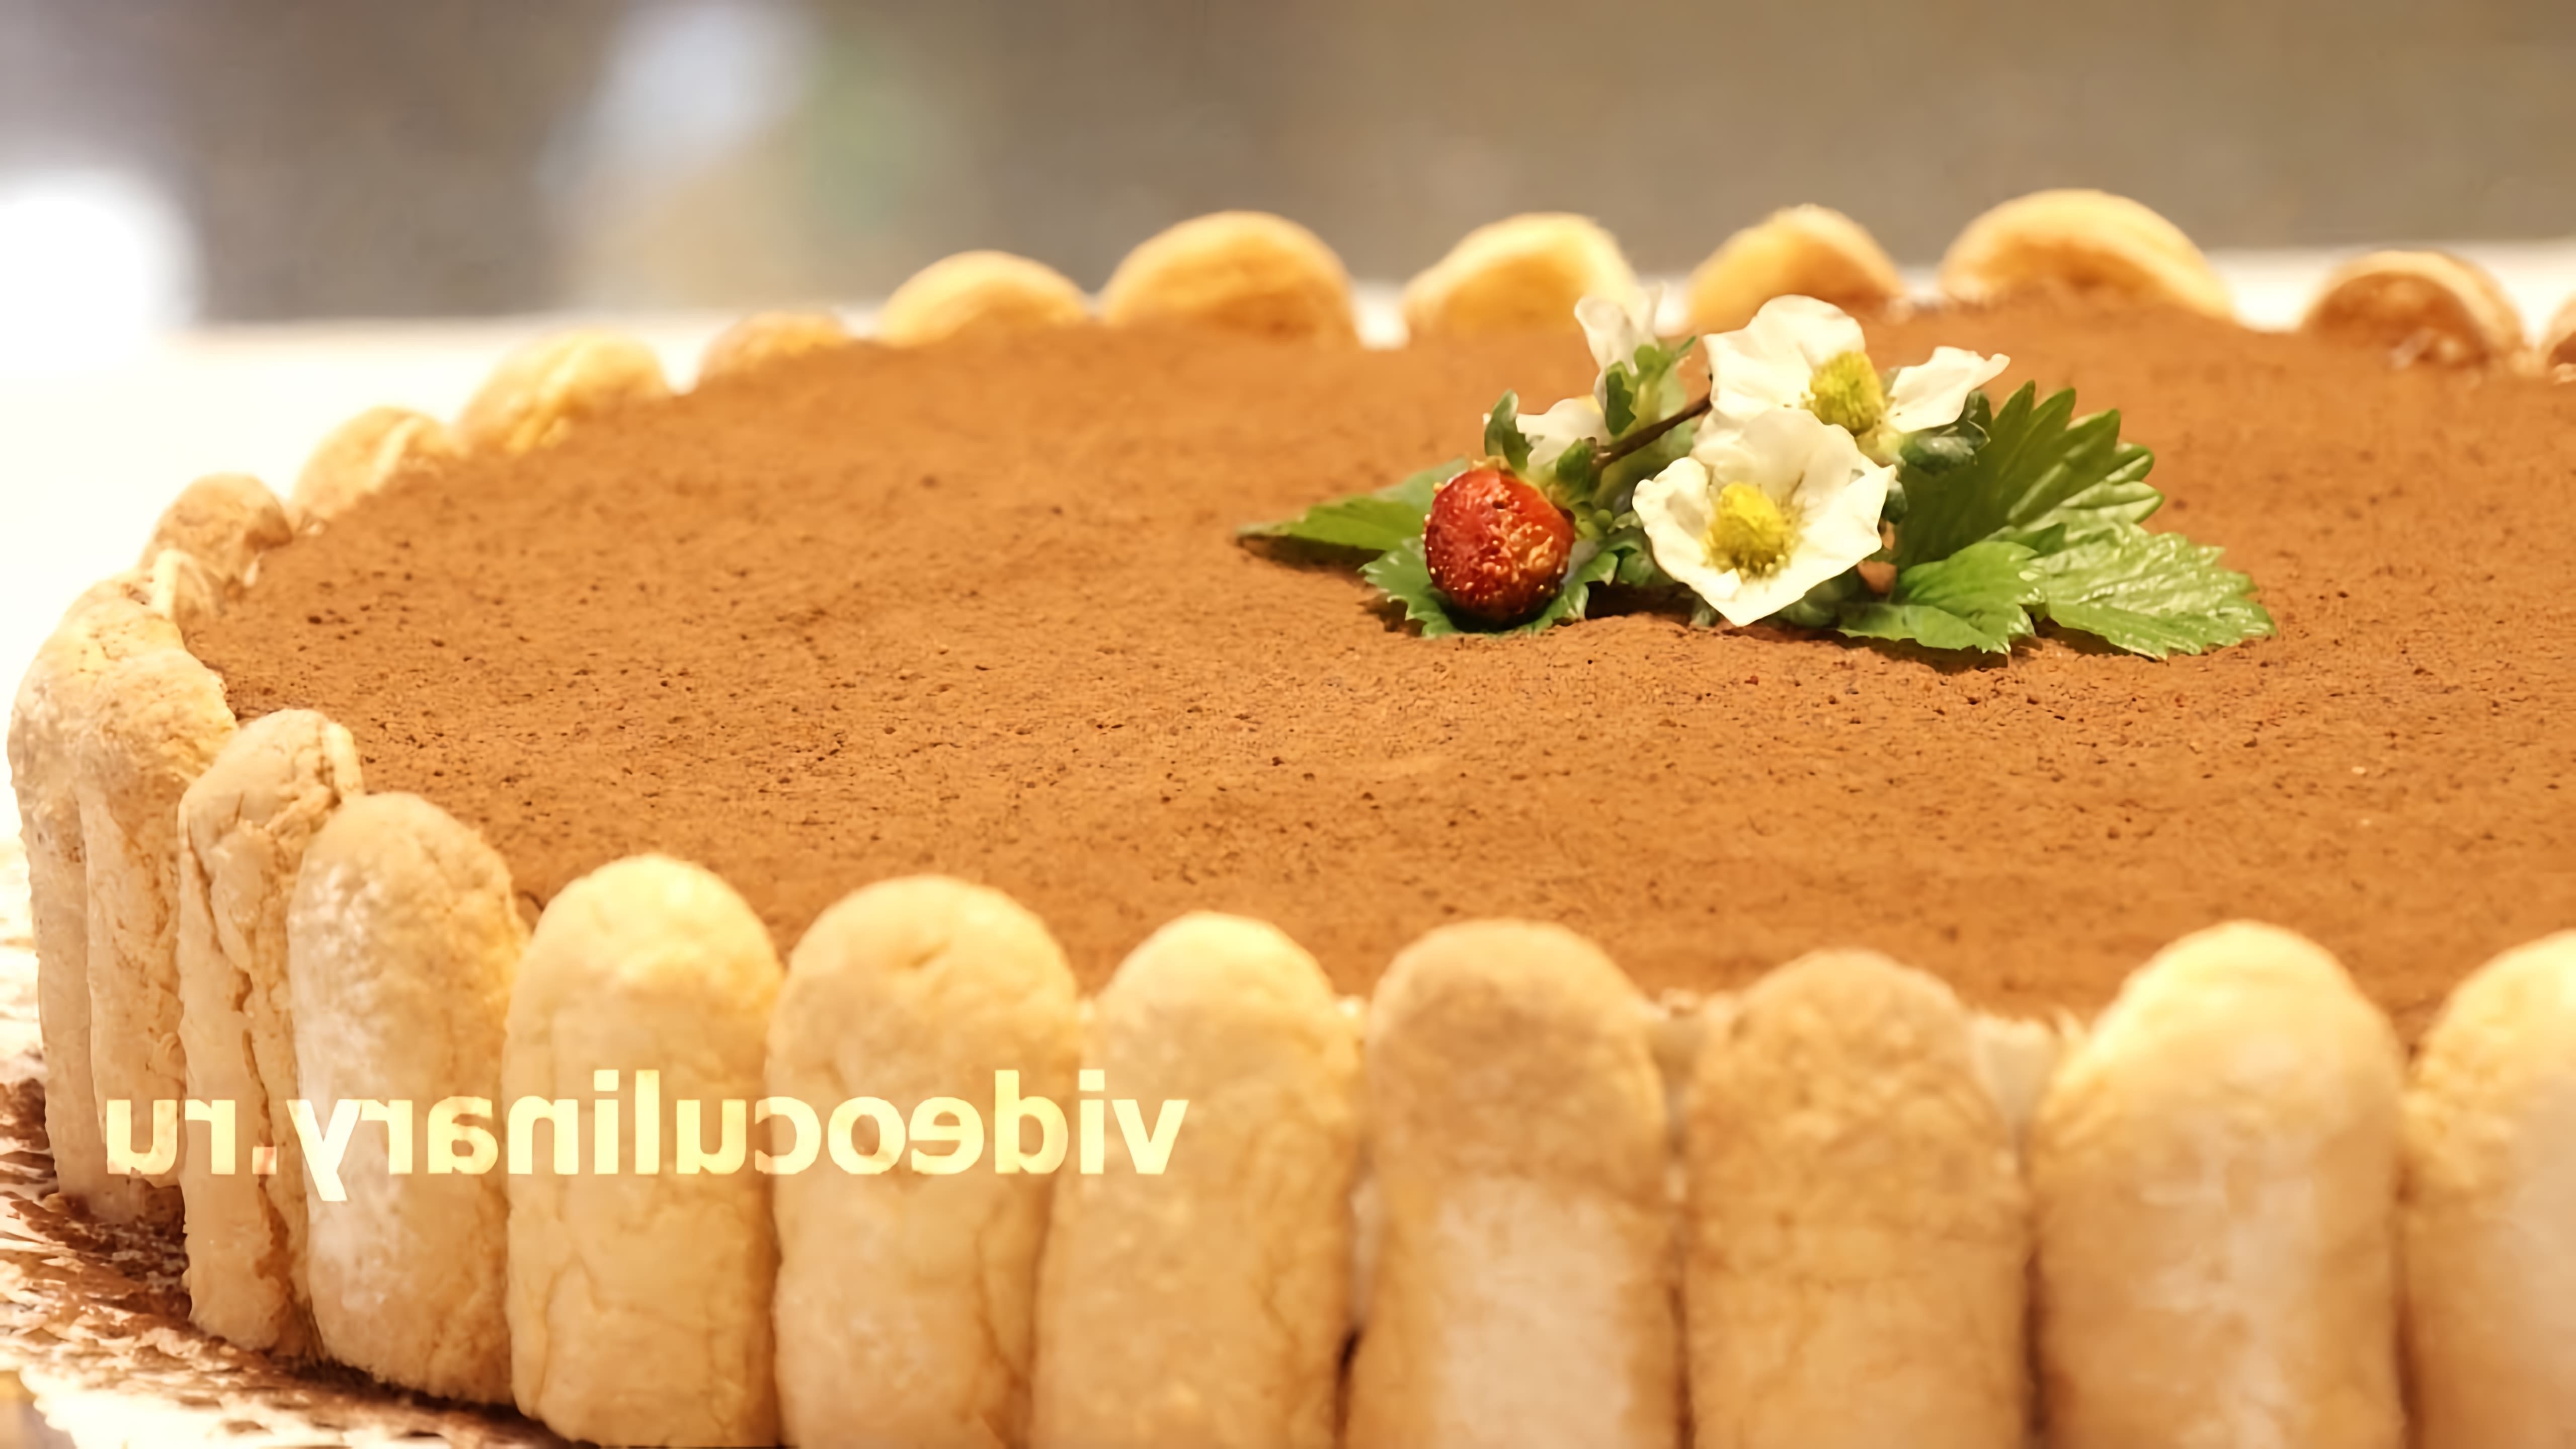 В этом видео демонстрируется рецепт приготовления торта Тирамису